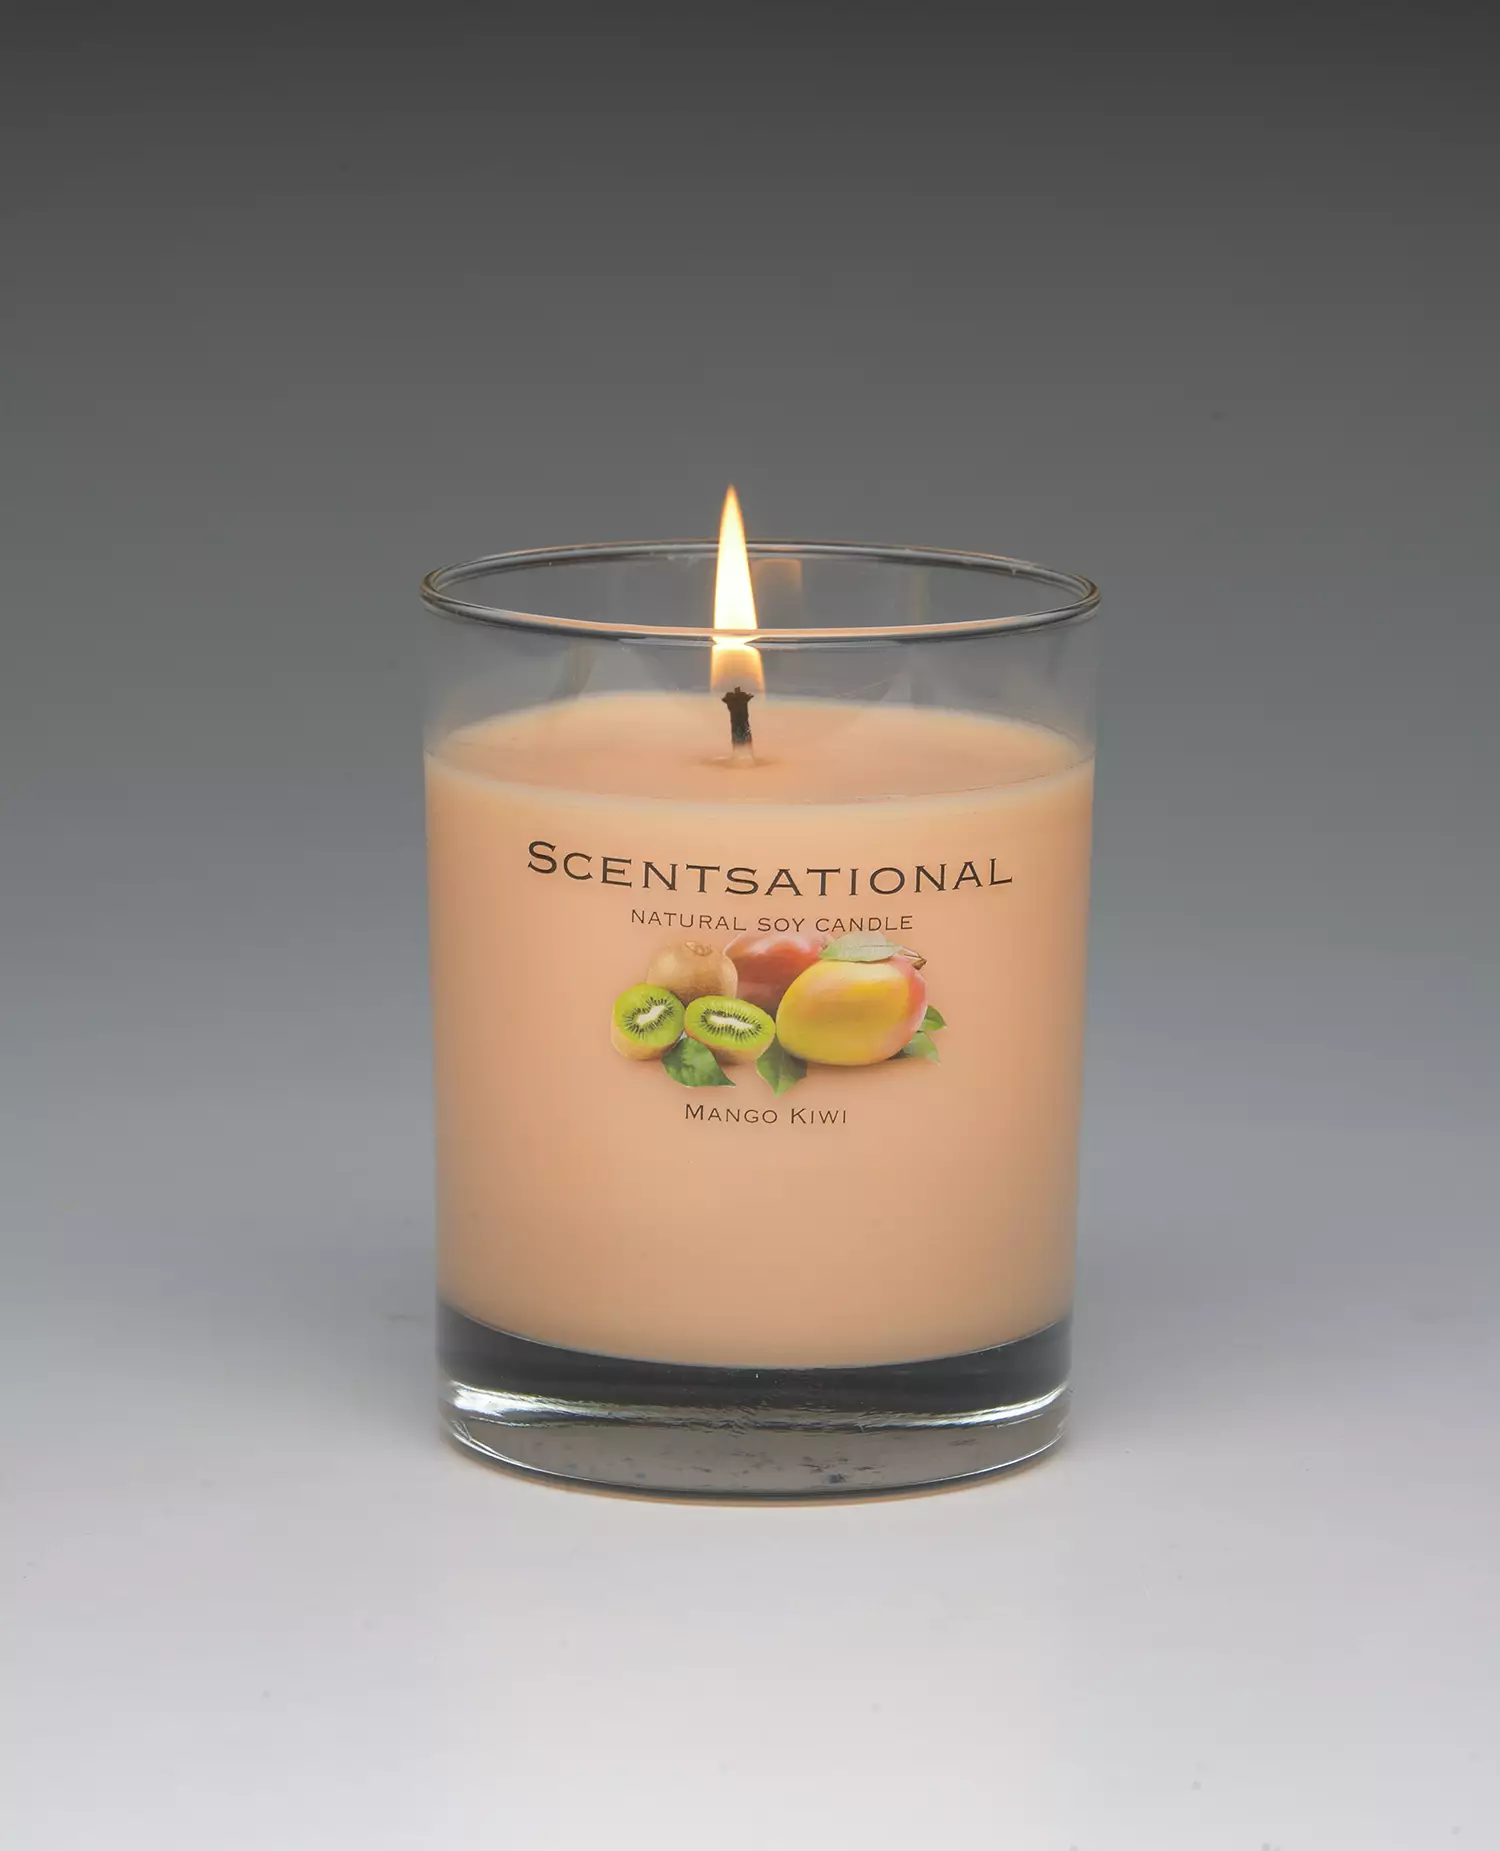 Mango Kiwi – 11oz scented candle burning